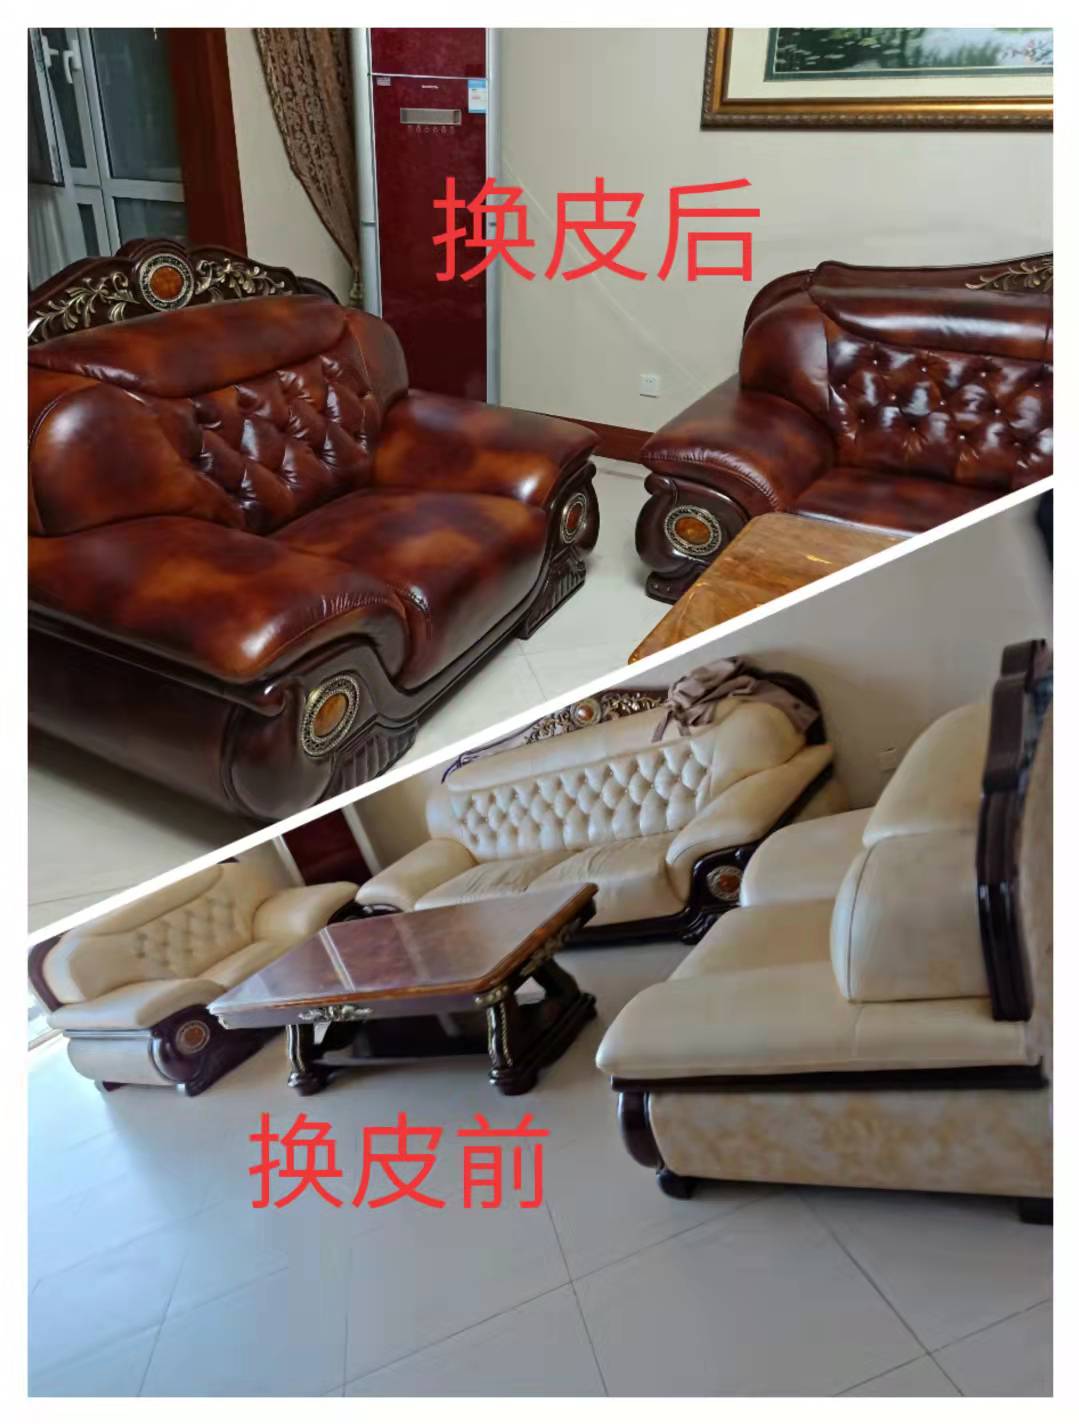 天津市椅子翻新 椅子换面 床头换布换海绵